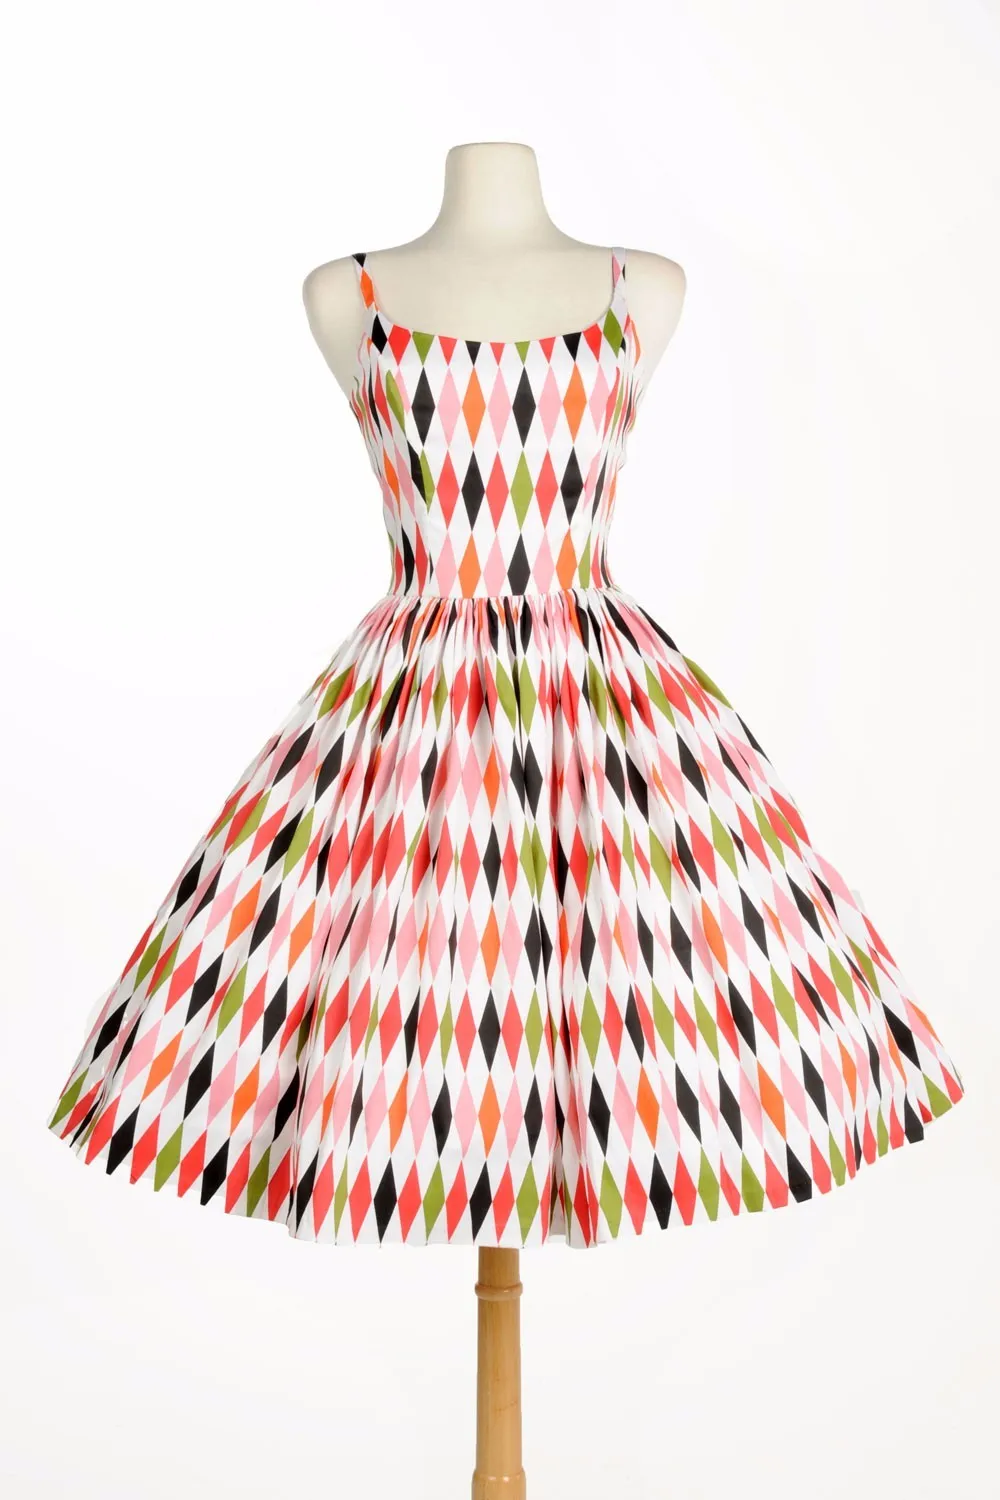 30-женское винтажное вдохновленное свободное платье Дженни в 50 s с принтом арлекина плюс размер pinup рокабилли летние платья vestidos jurken